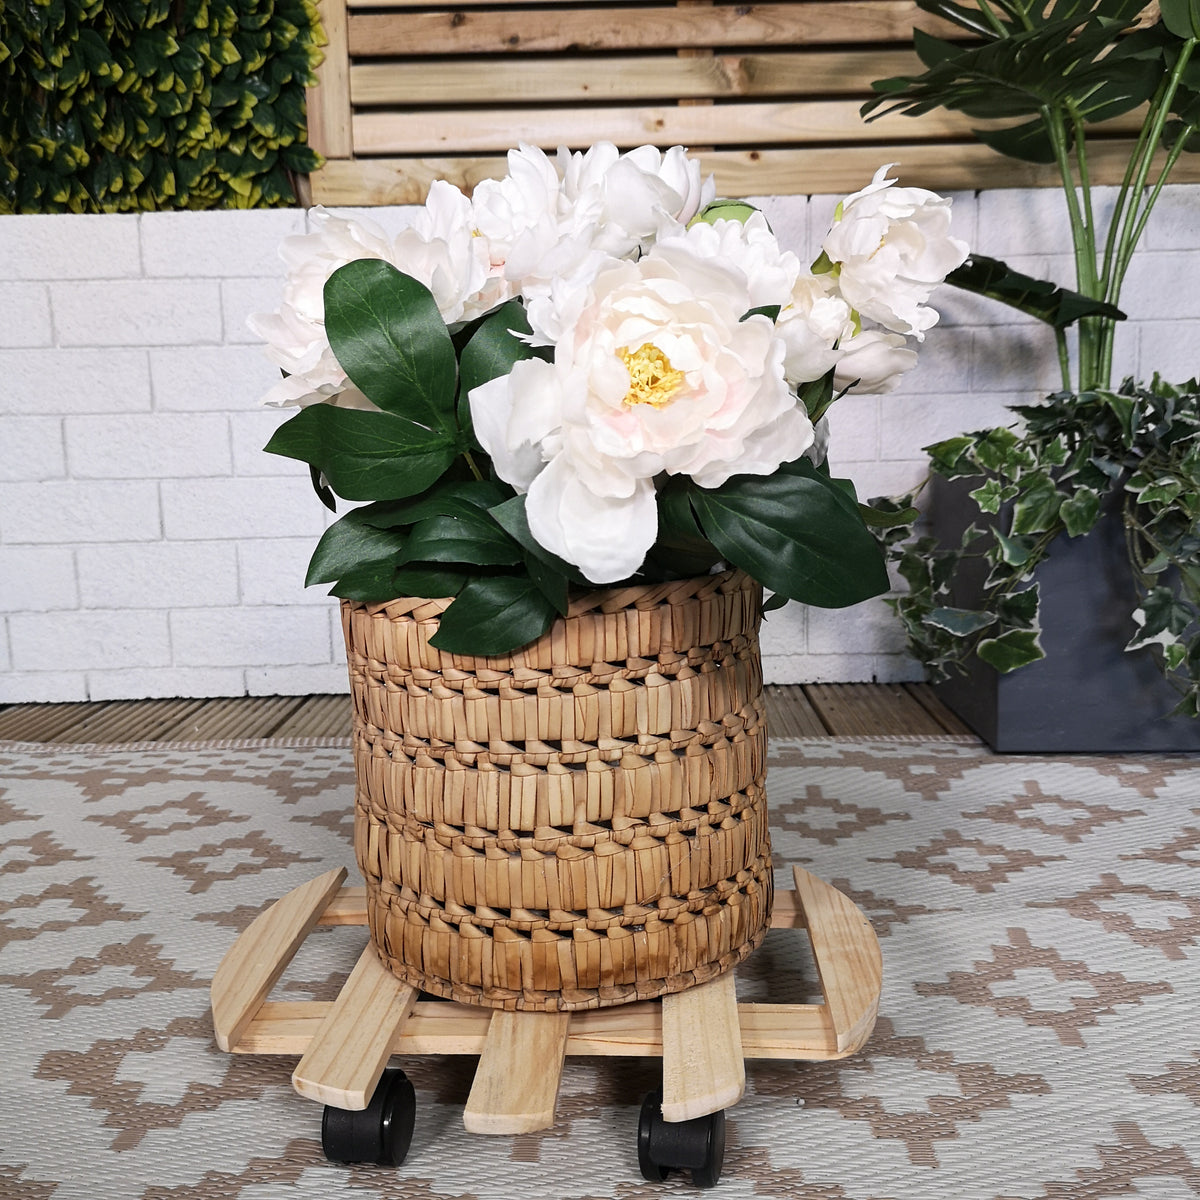 35cm Round Wooden Garden Plant Pot Flower Trolley Stand on Wheels